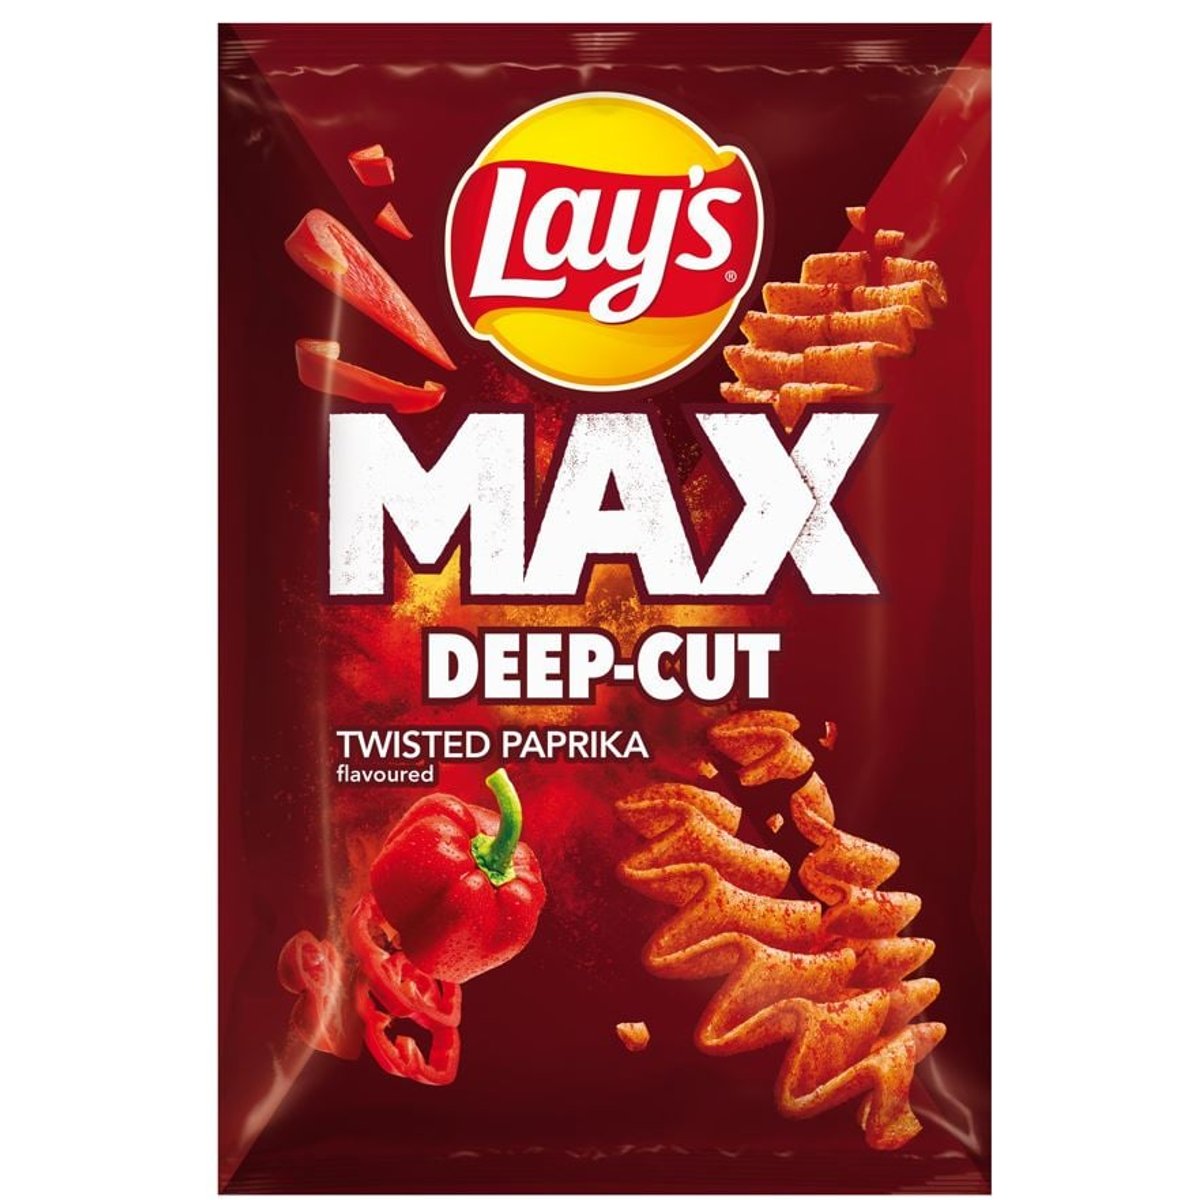 Lay's Max Deep-Cut s příchutí papriky